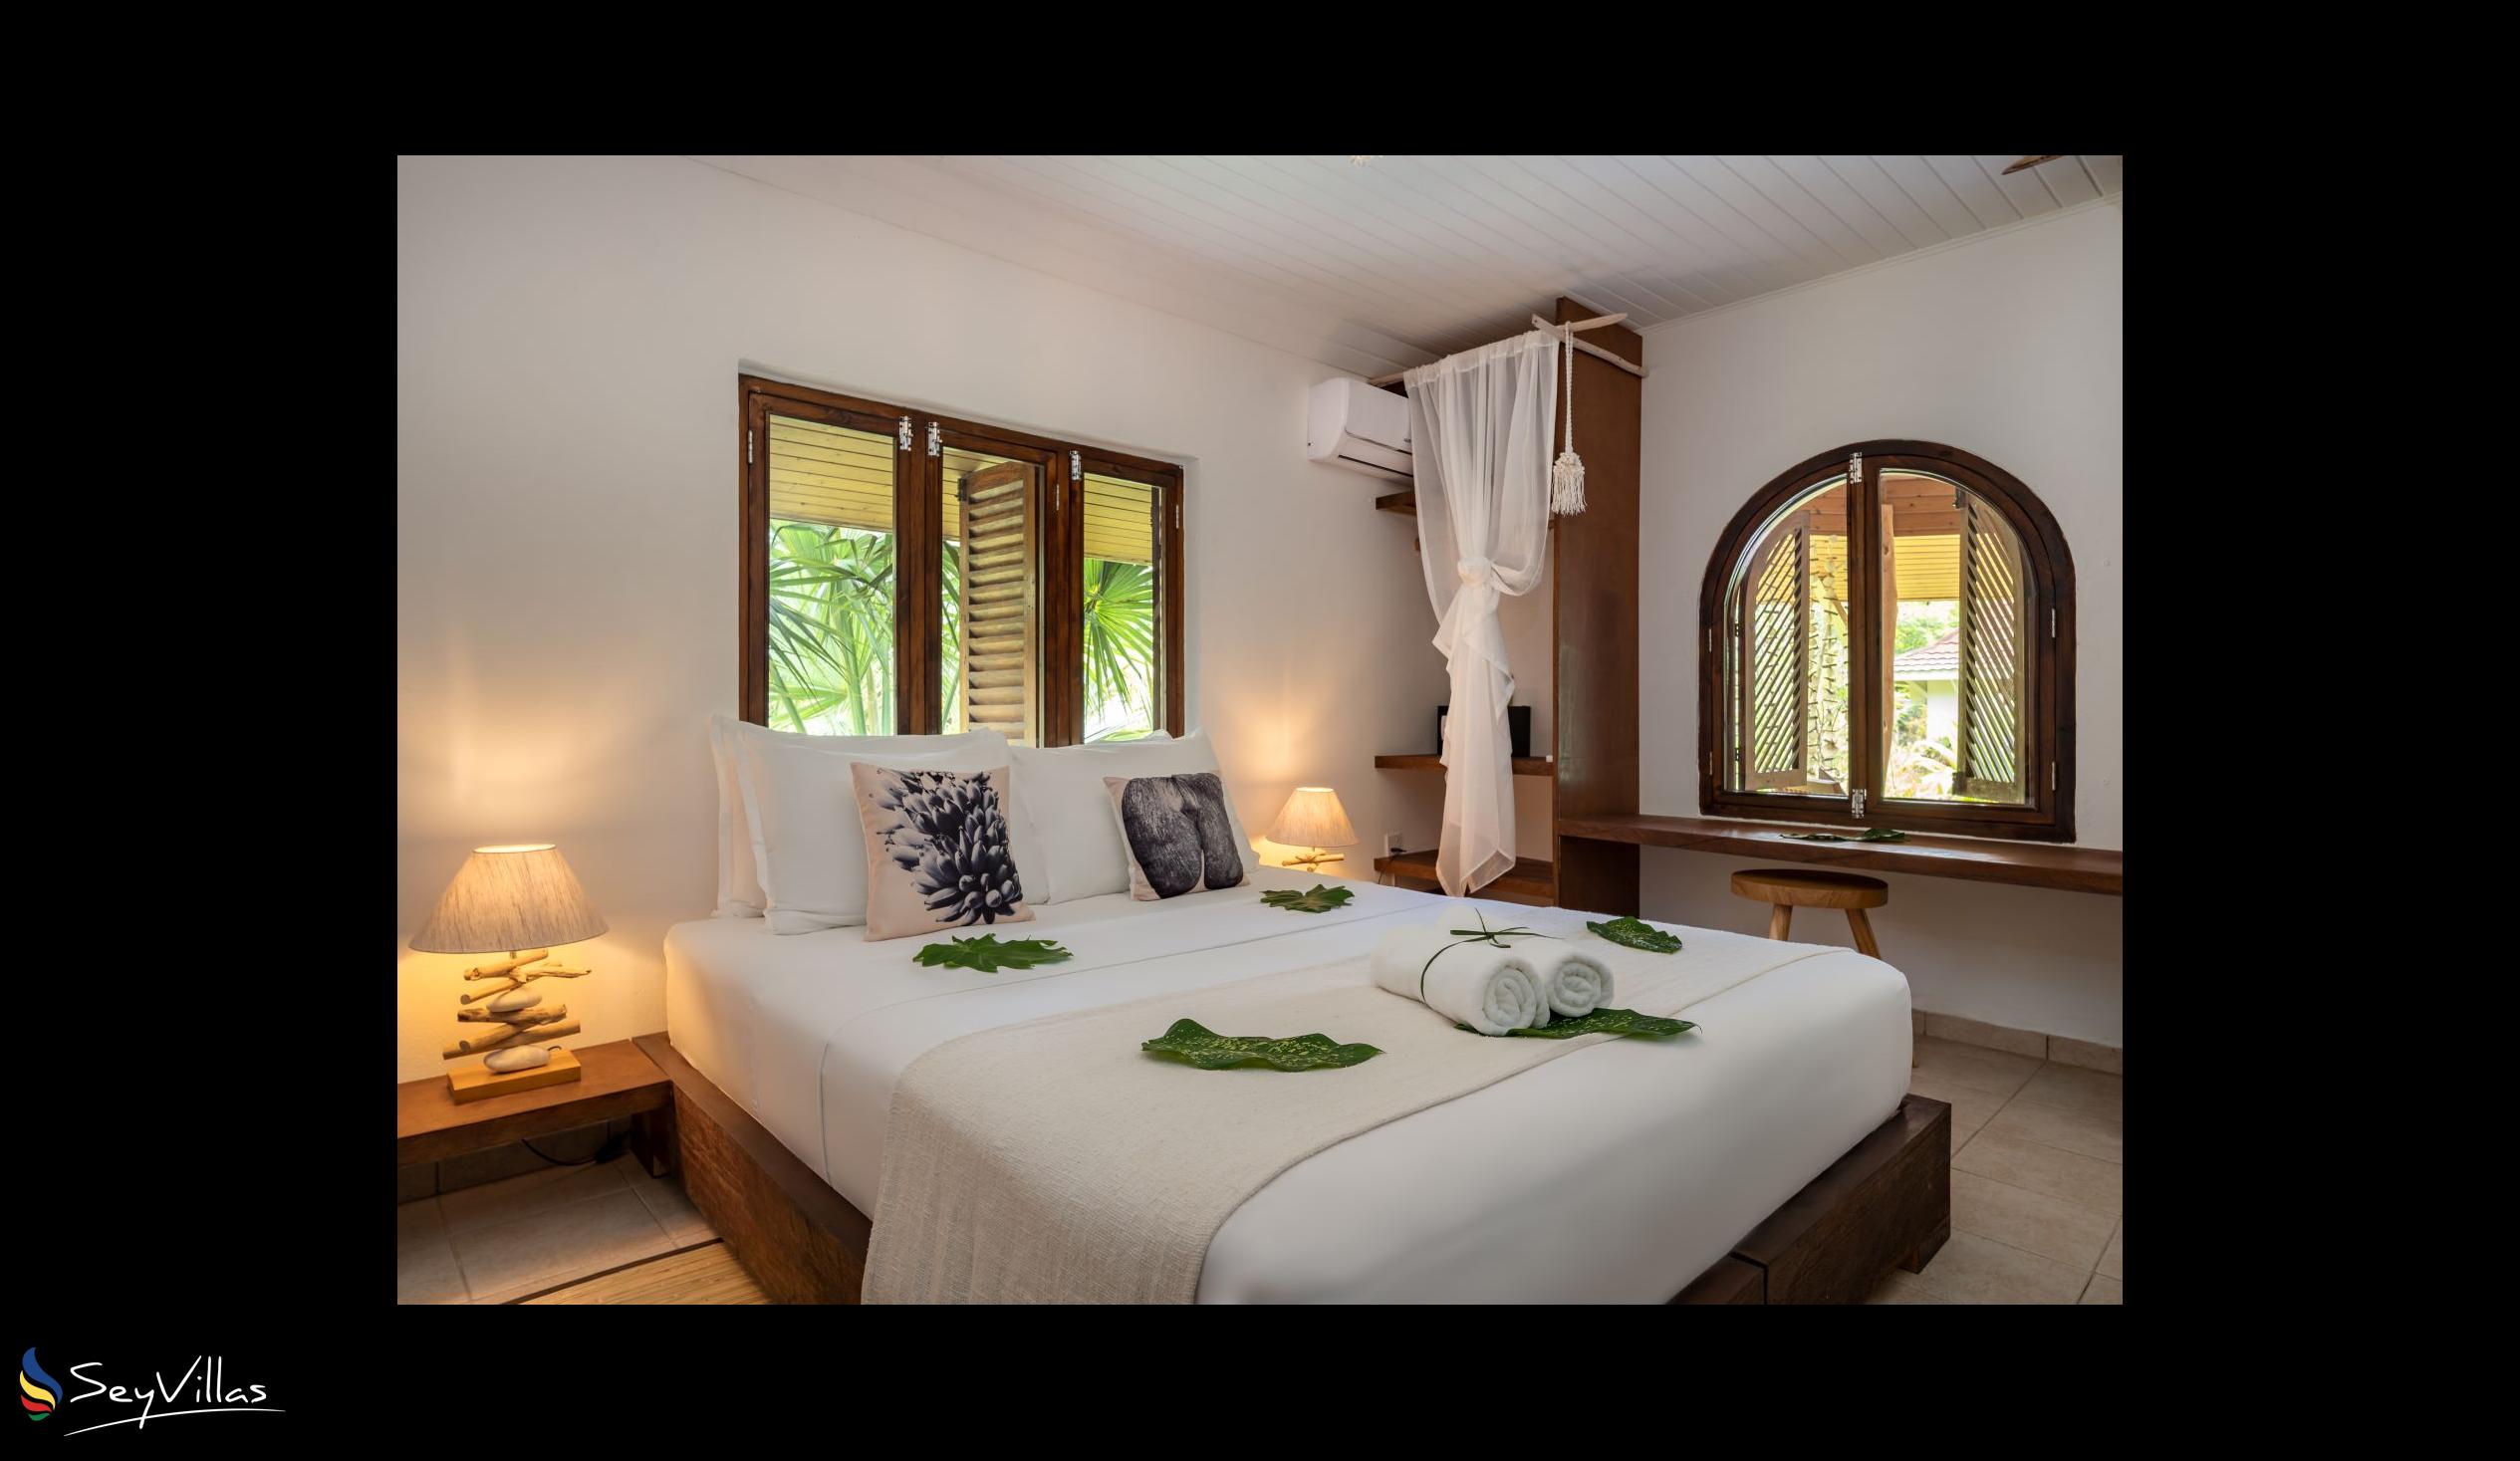 Photo 66: Bliss Hotel Praslin - Eden Garden - Charm Room - Praslin (Seychelles)